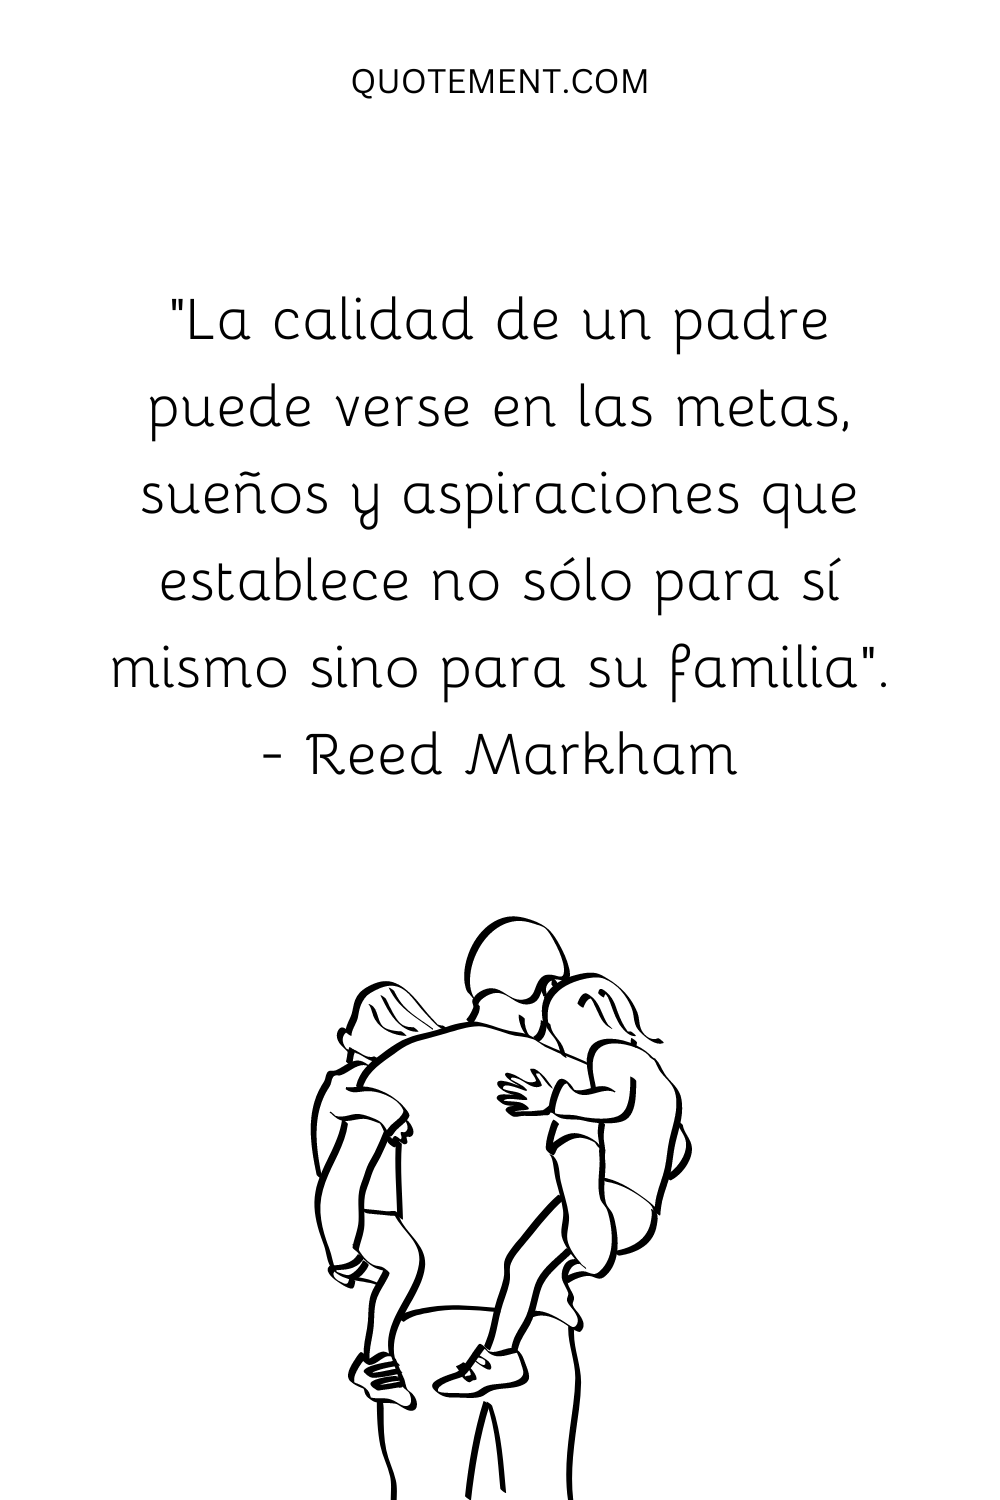 La calidad de un padre se aprecia en los objetivos, sueños y aspiraciones que se fija no sólo para sí mismo, sino también para su familia. - Reed Markham